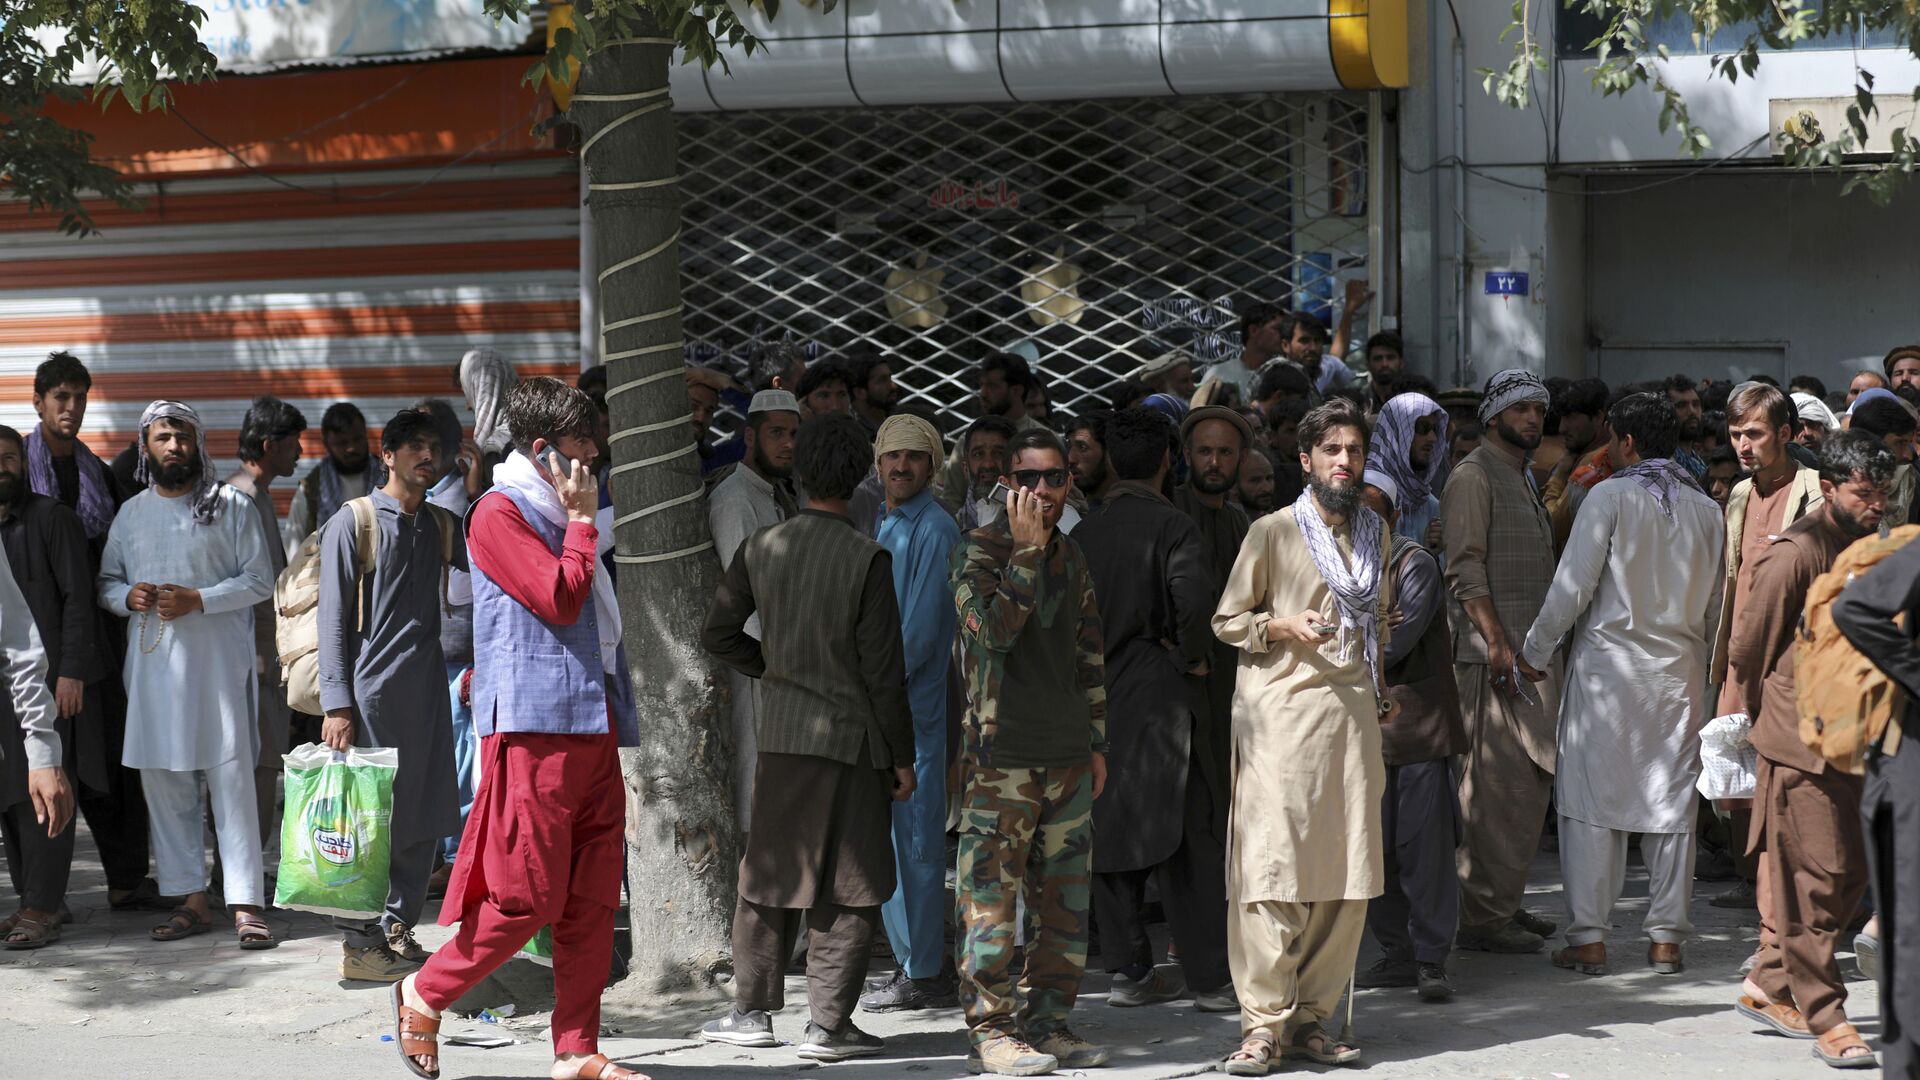 Афганцы в очереди в банк в Кабуле  - Sputnik Таджикистан, 1920, 17.08.2021